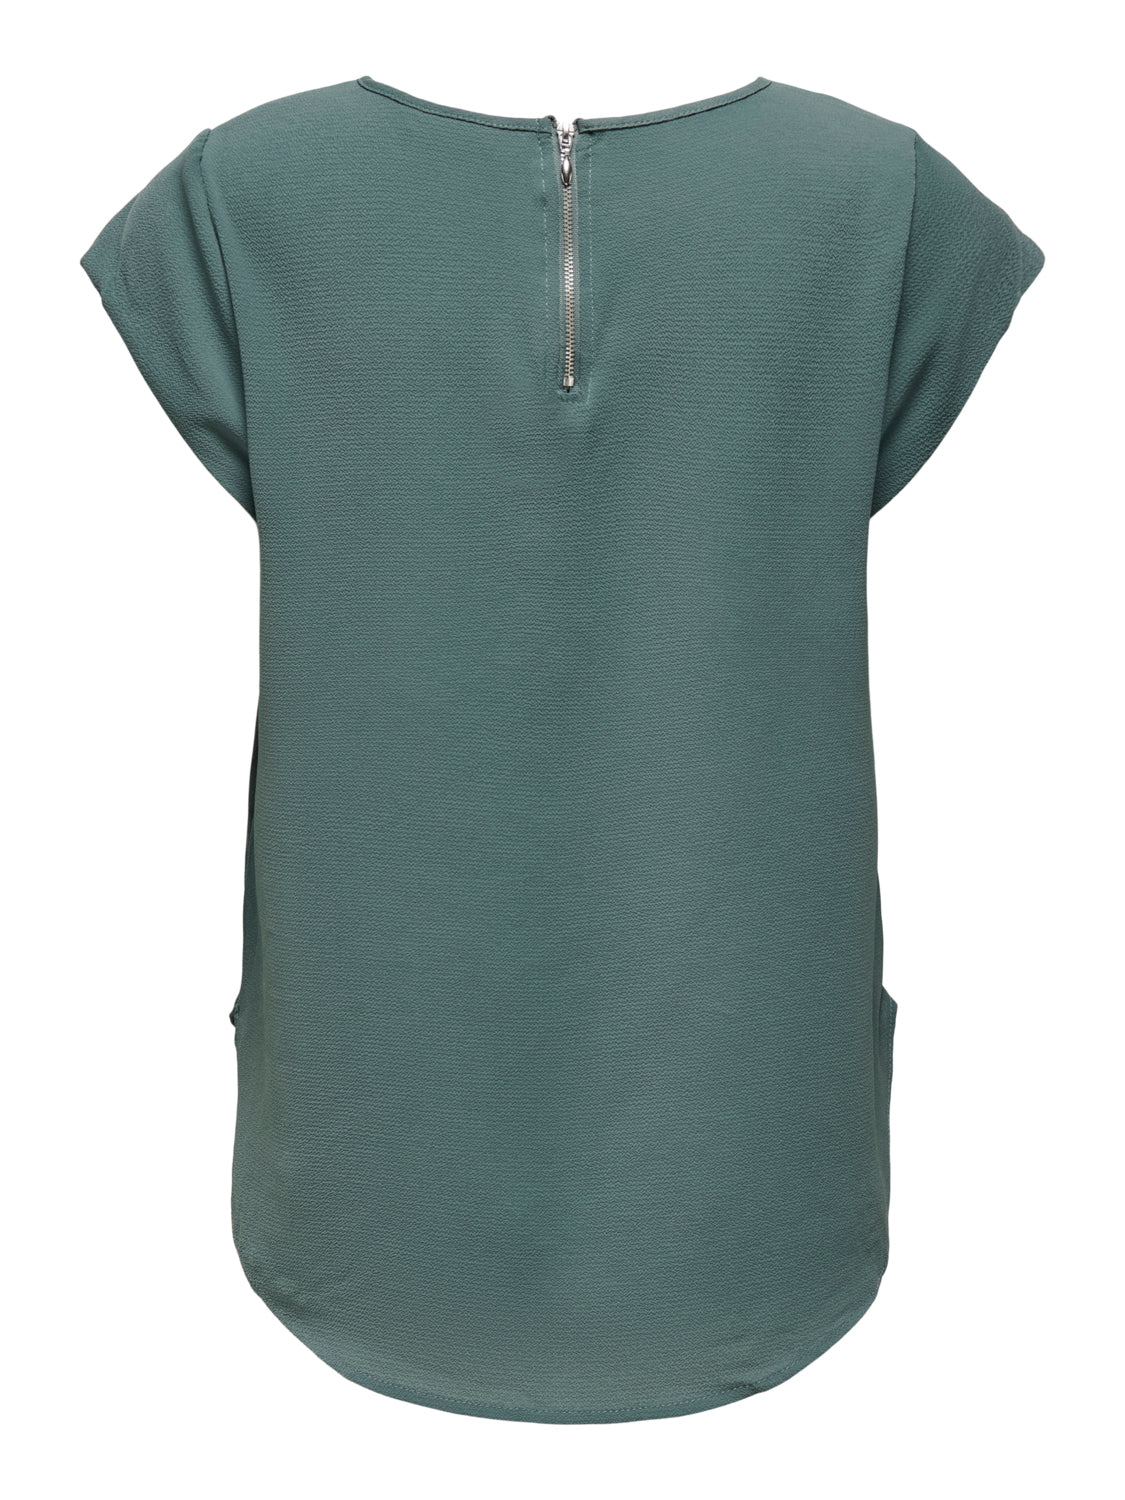 ONLVIC T-shirts & Tops - Balsam Green